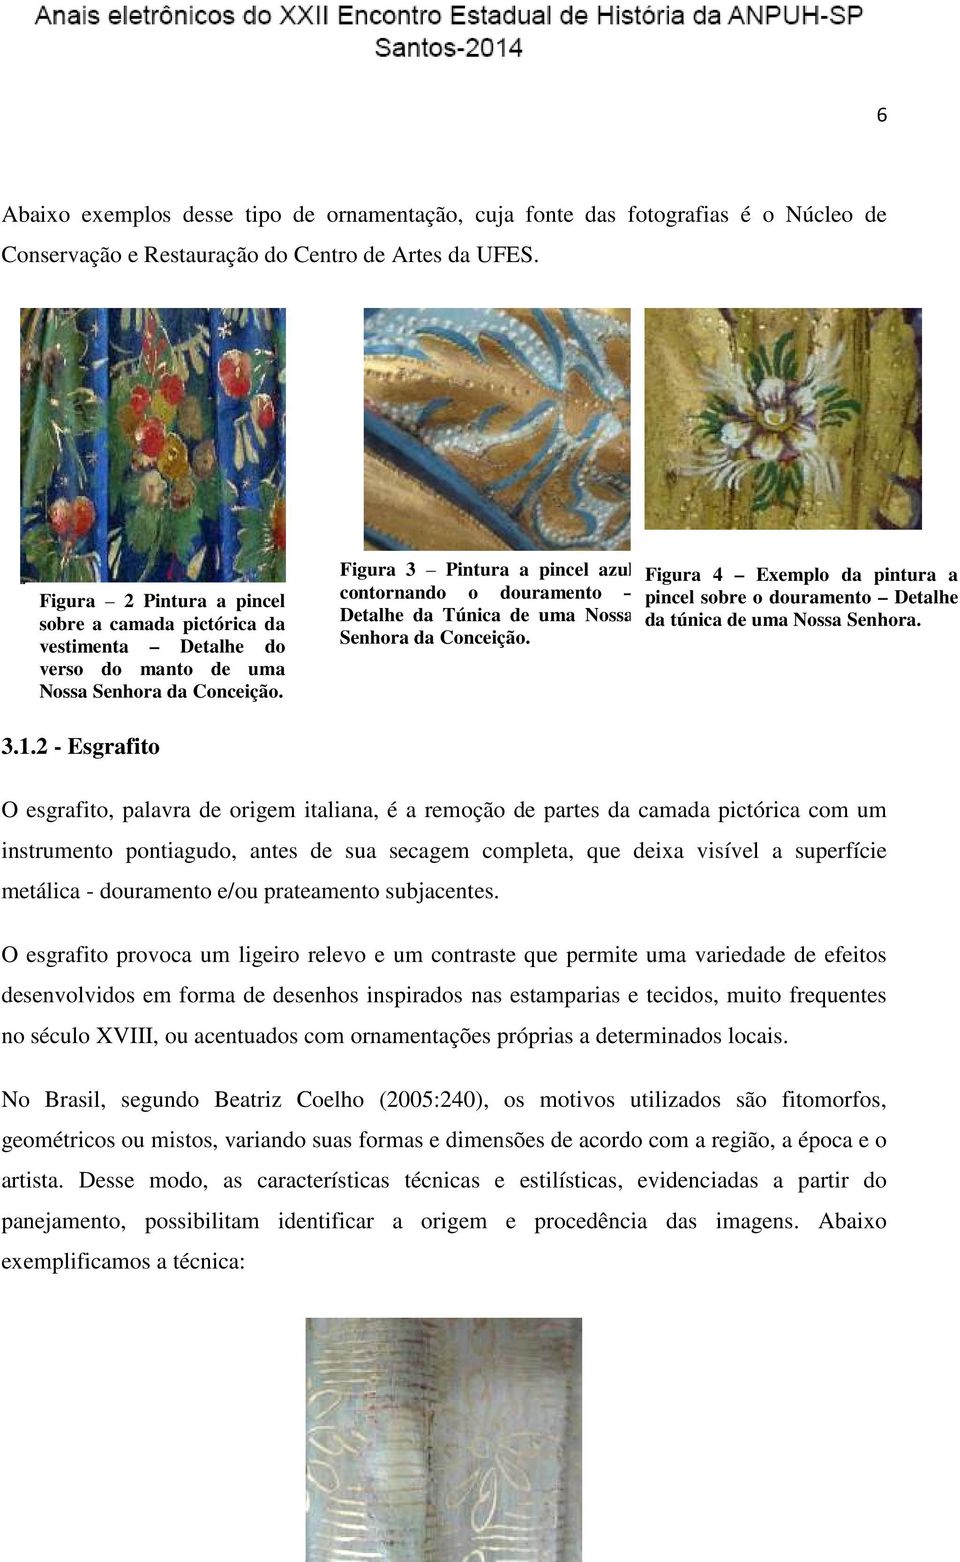 Figura 3 Pintura a pincel azul contornando o douramento Detalhe da Túnica de uma Nossa Senhora da Conceição.